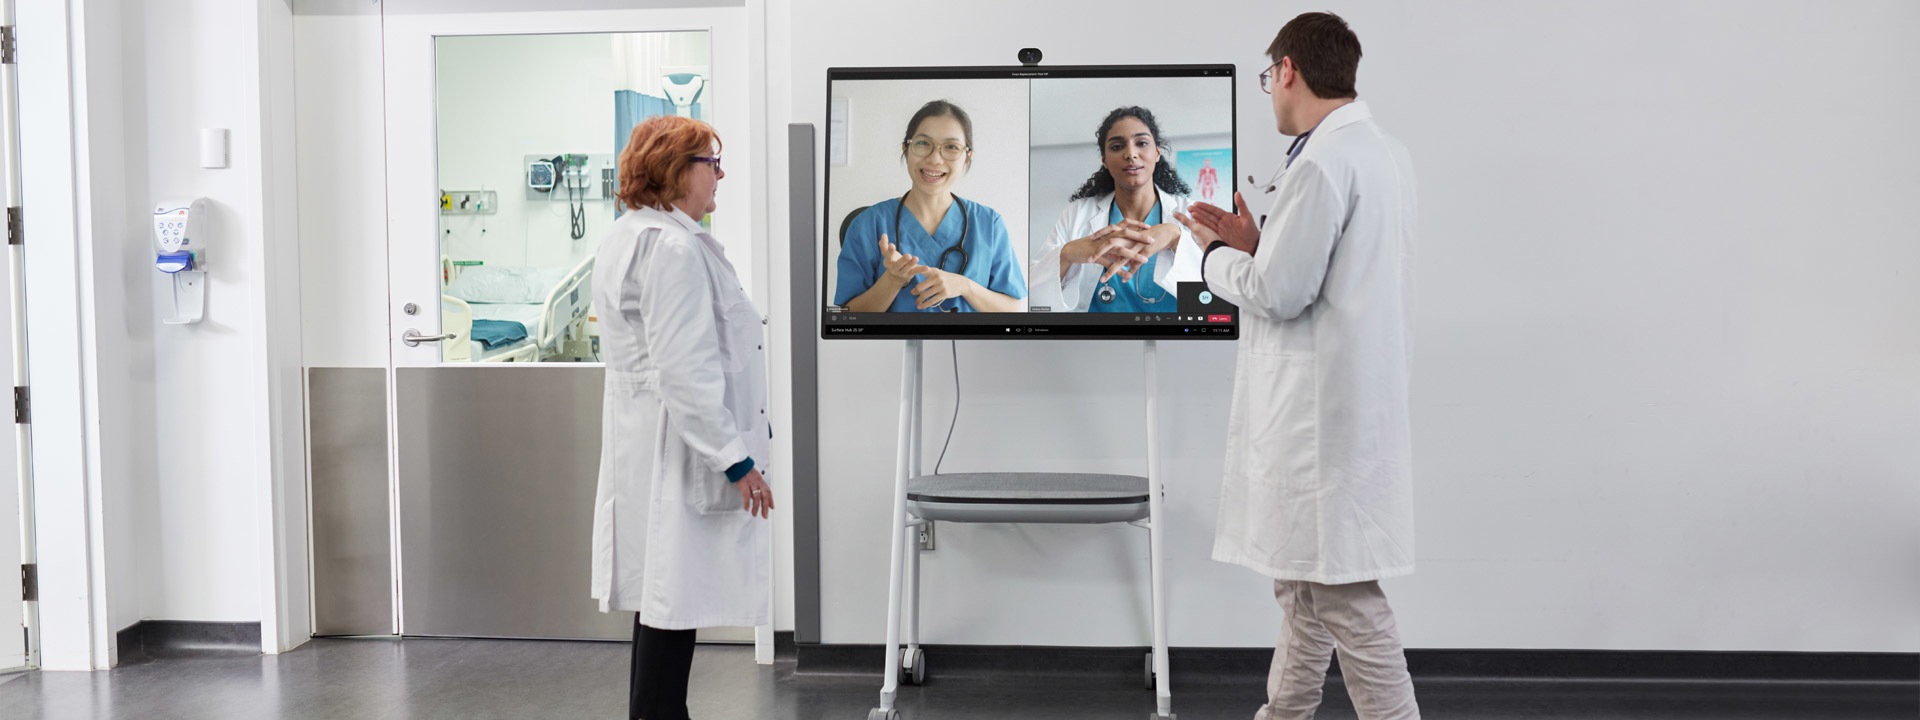 病院の中で Teams ビデオ通話に参加する 2 人の医療専門家